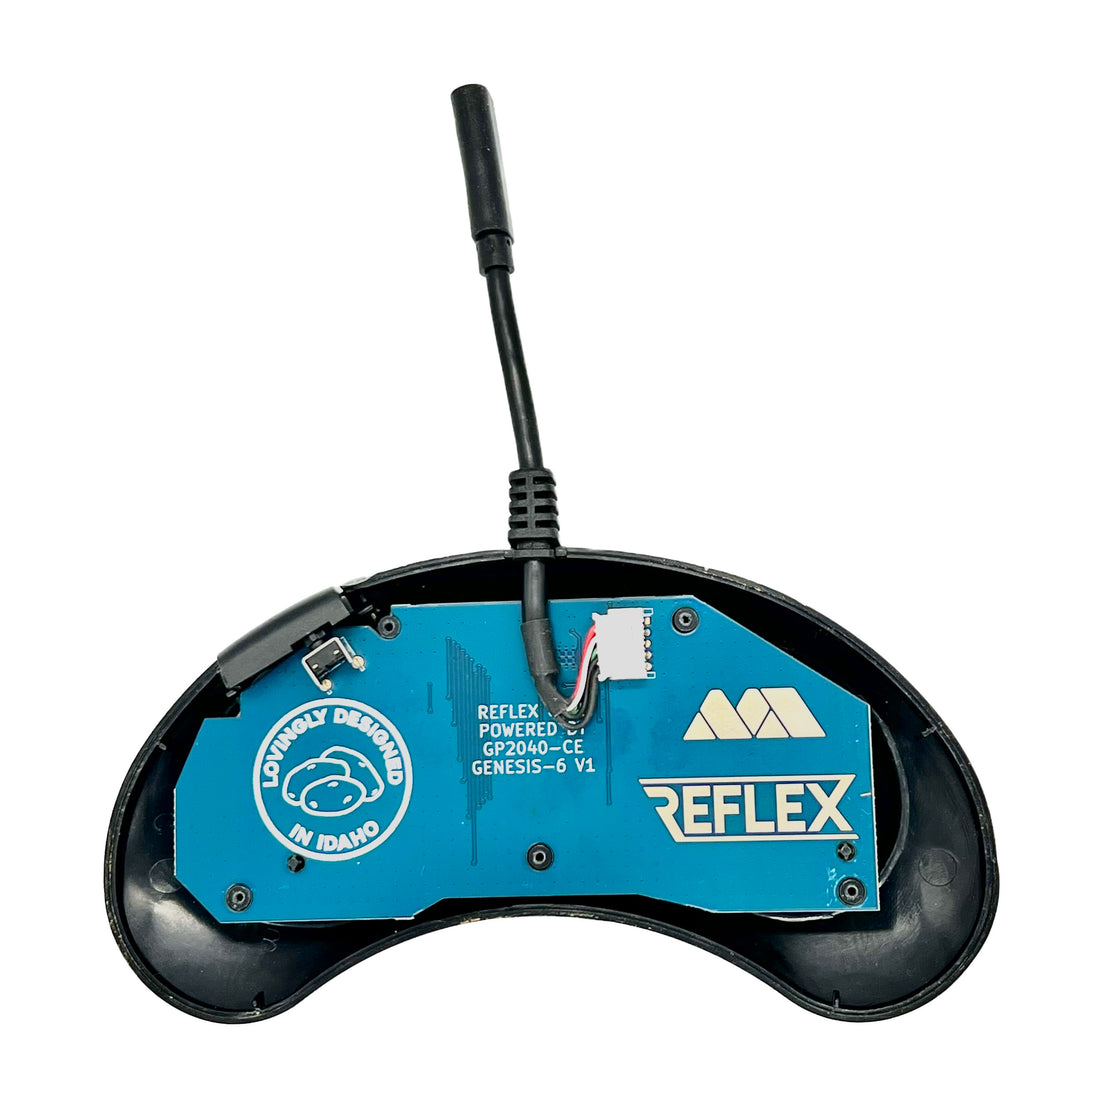 Kits de conversión USB del controlador original Reflex CTRL